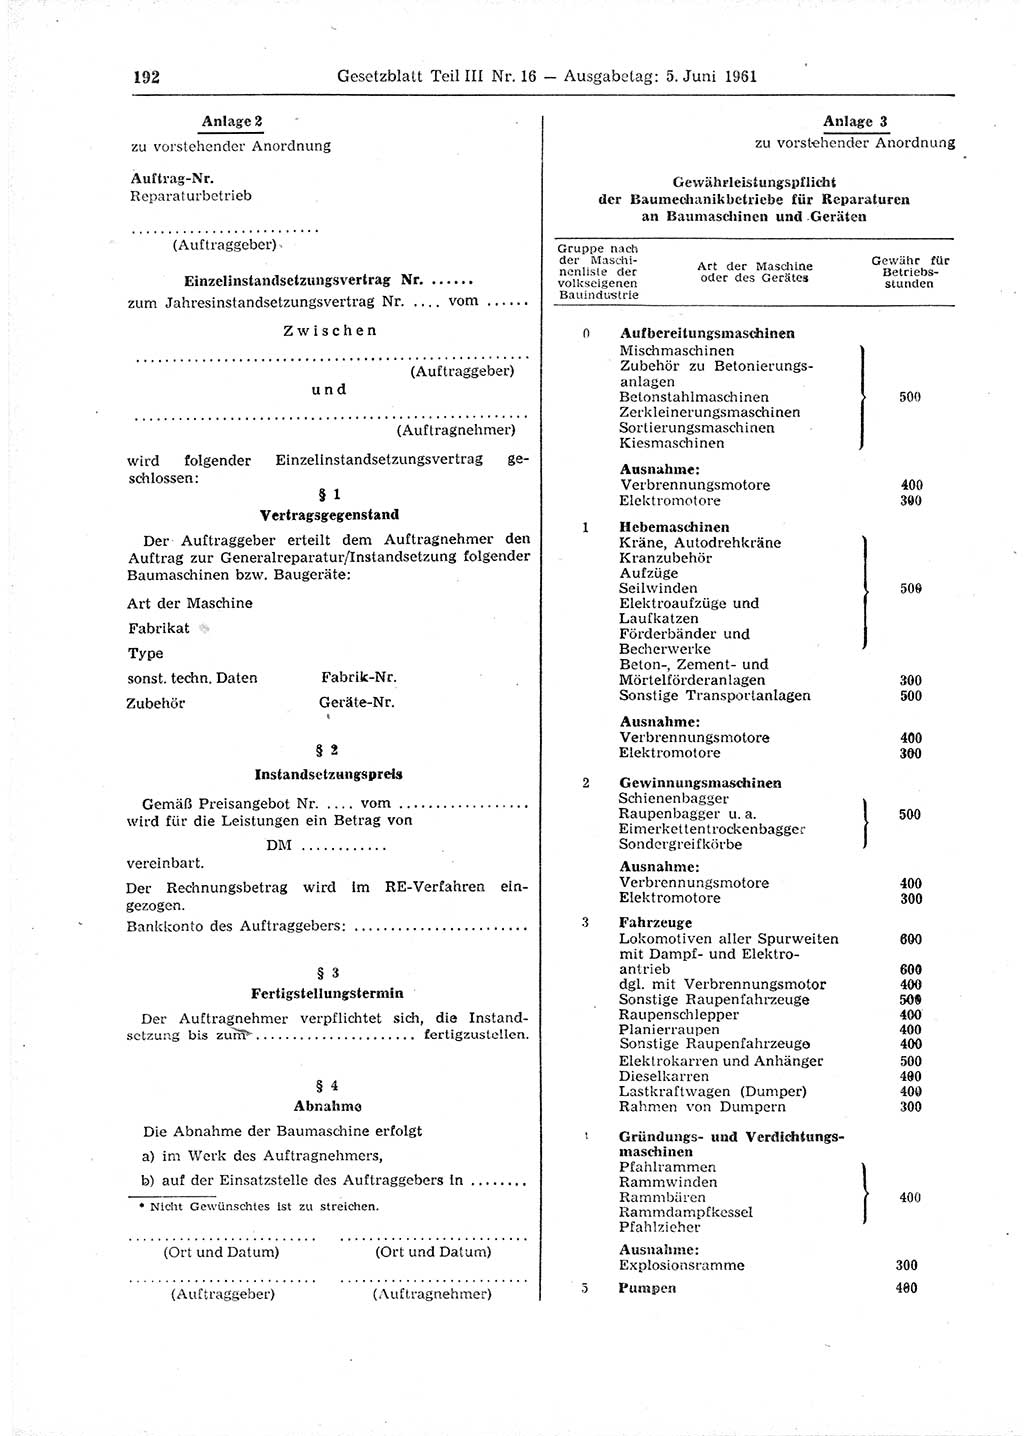 Gesetzblatt (GBl.) der Deutschen Demokratischen Republik (DDR) Teil ⅠⅠⅠ 1961, Seite 192 (GBl. DDR ⅠⅠⅠ 1961, S. 192)